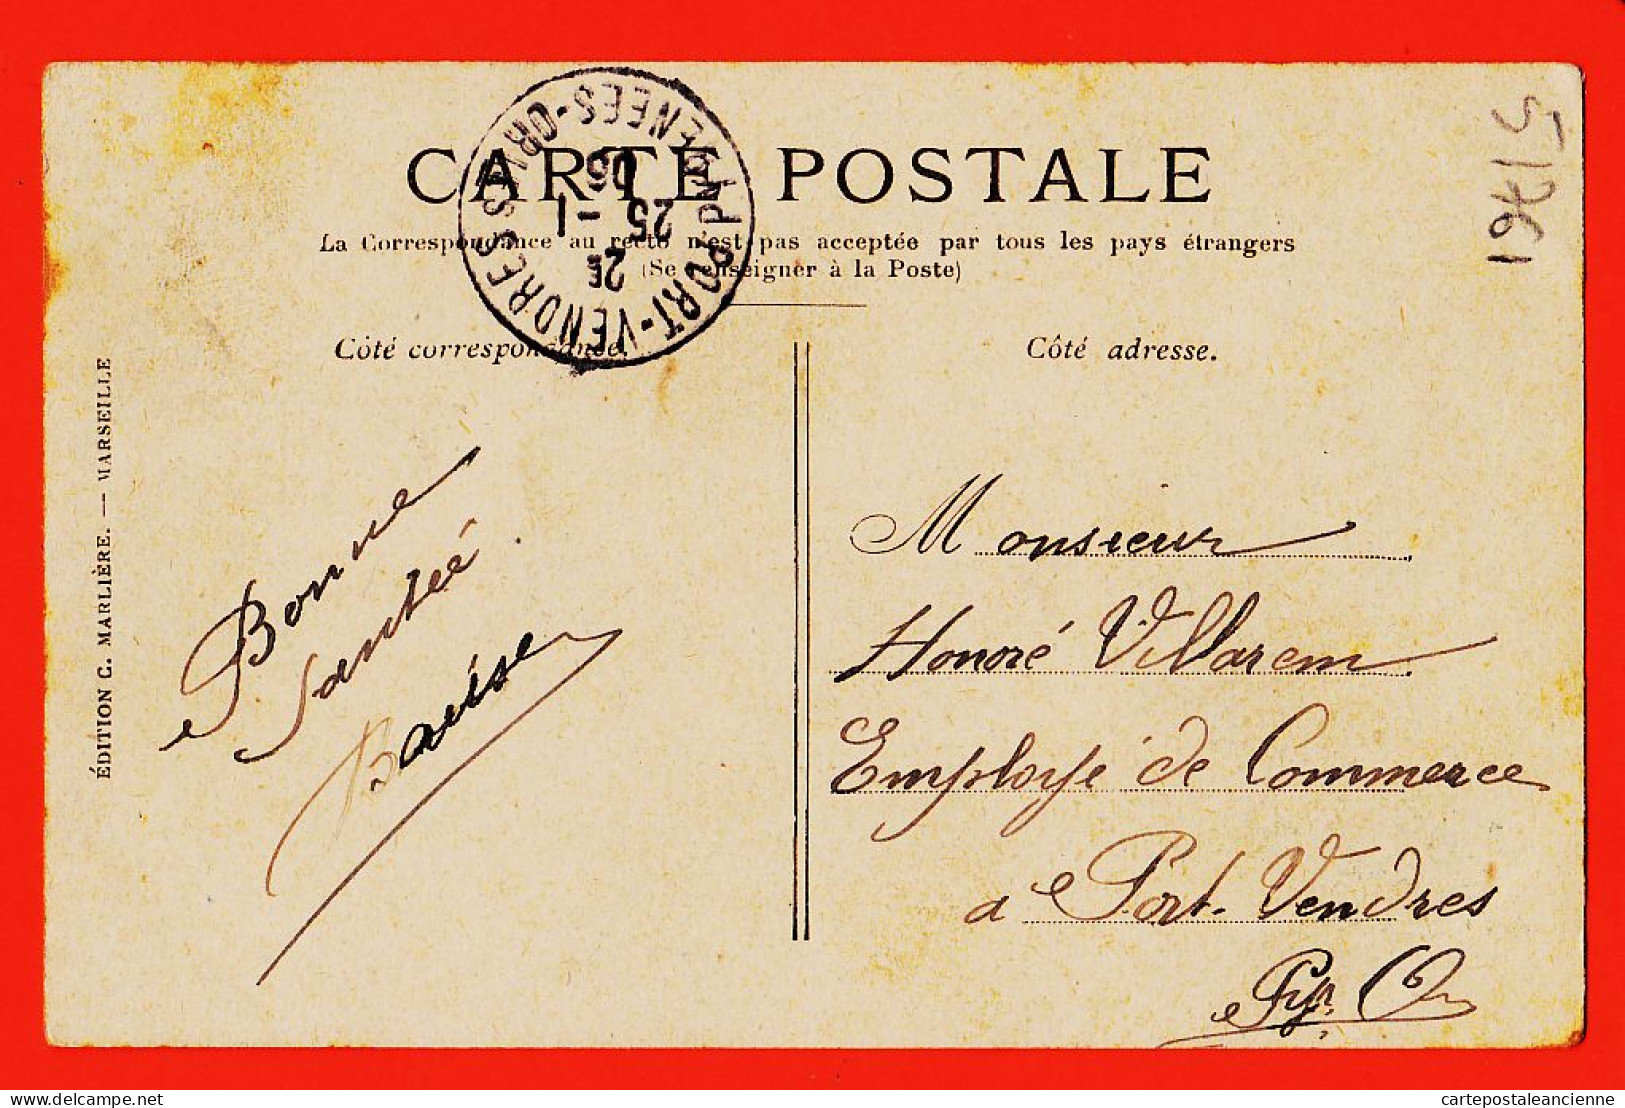 10761 ● MARSEILLE (13) Le Quai De La FRATERNITE  1905 à Honoré VILLAREM  Port-Vendres  MARLIERE N° 5 - Joliette, Port Area